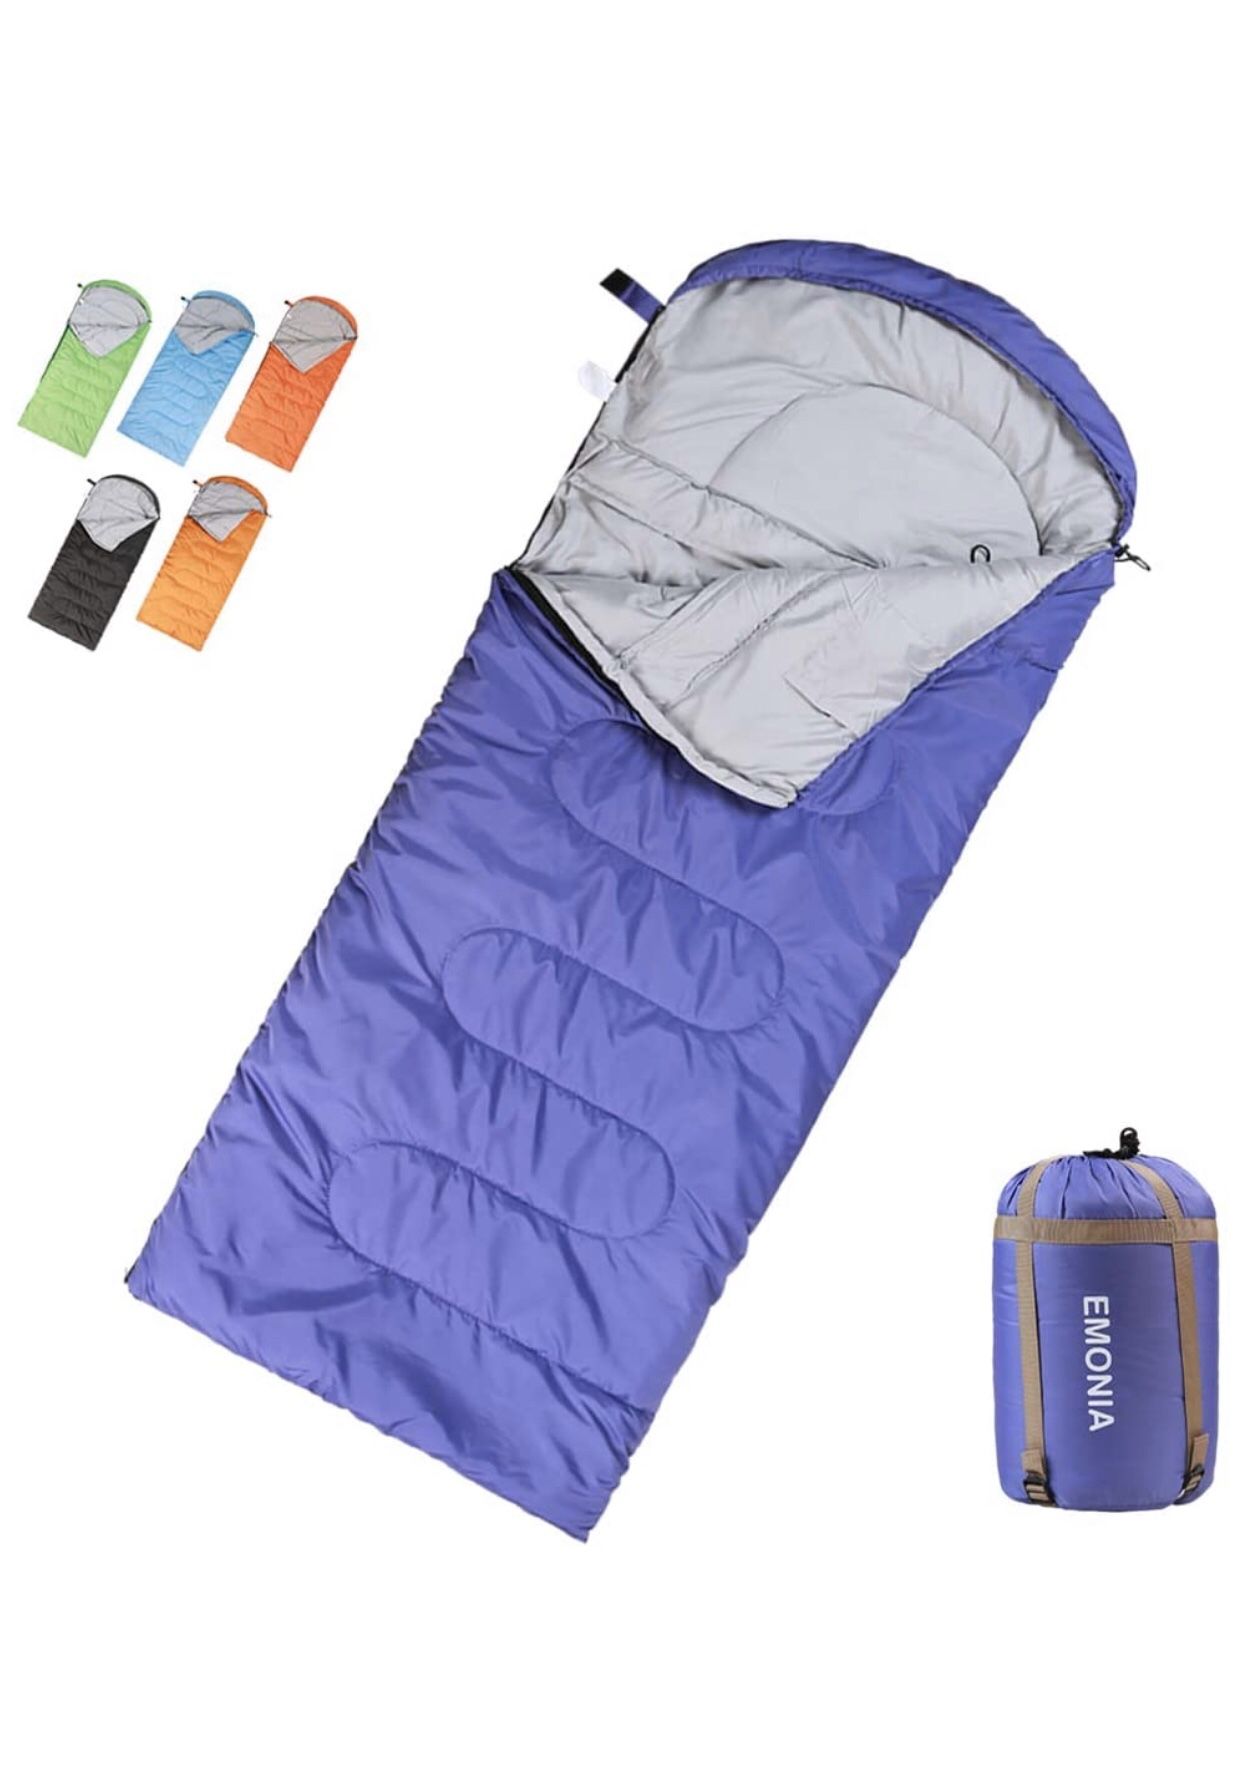 Camping Sleeping Bag, traveling bag